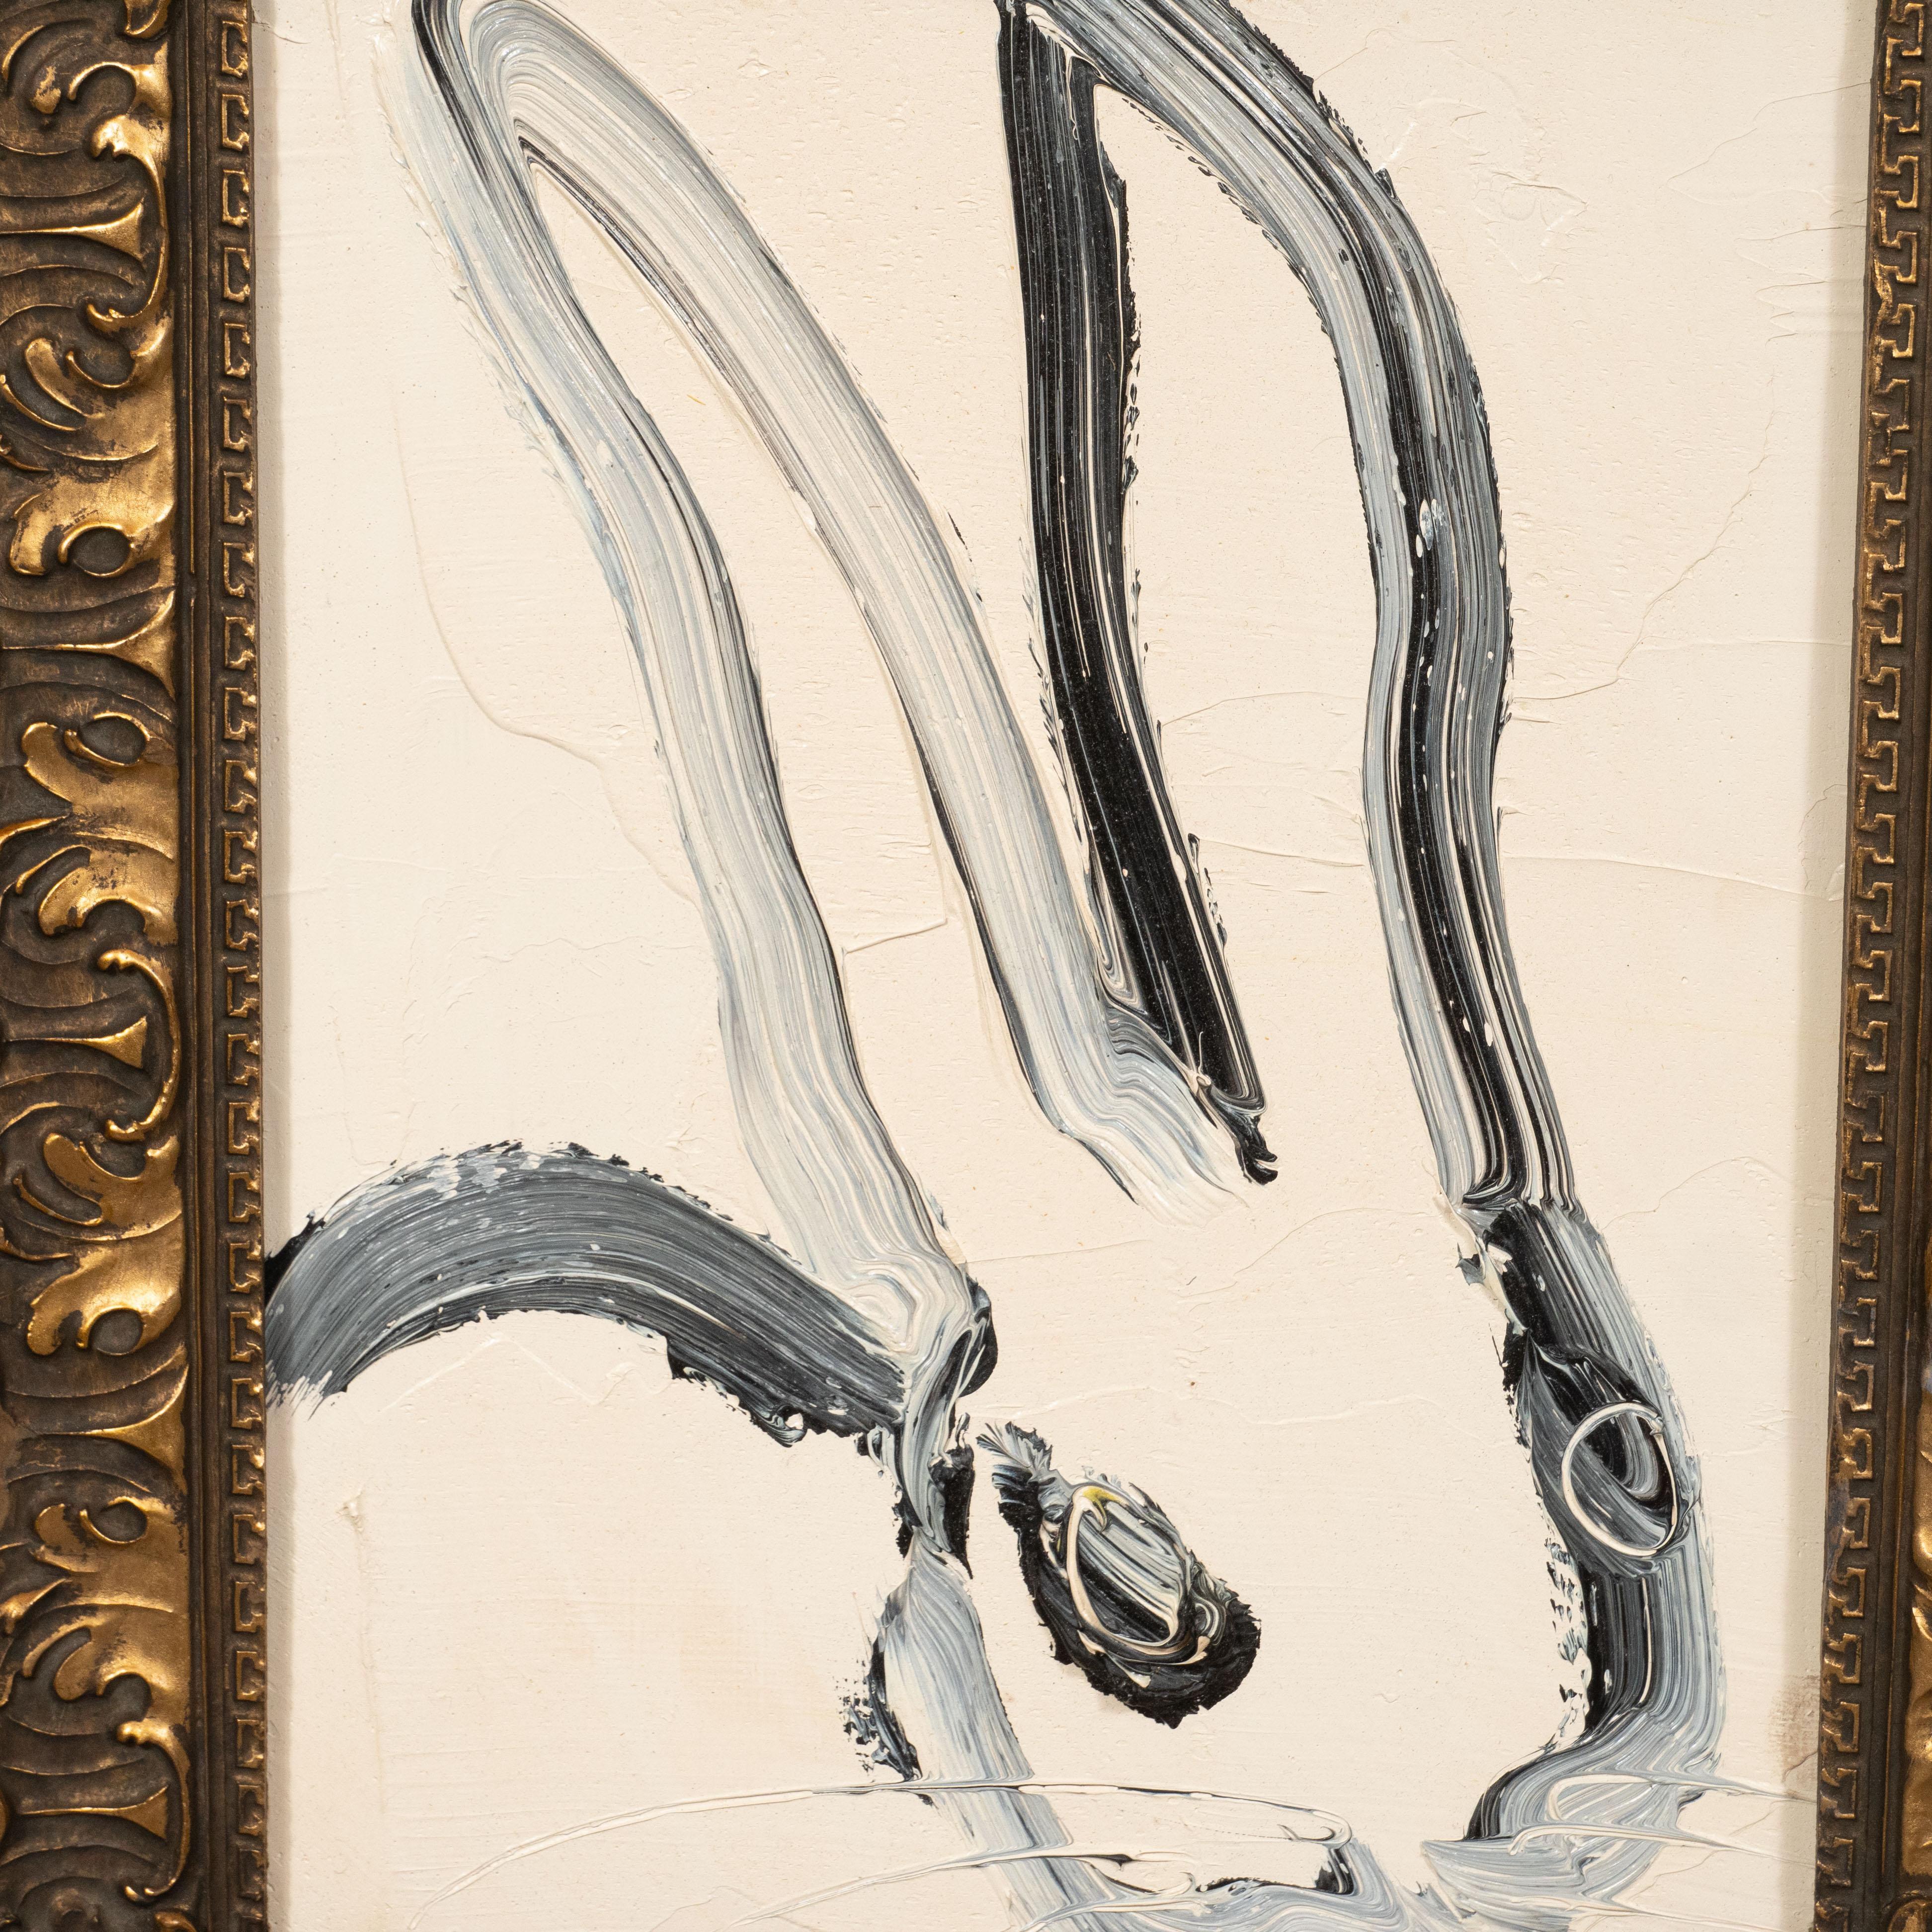 Dieses skurrile und raffinierte Gemälde wurde 2013 von dem geschätzten zeitgenössischen Maler Hunt Slonem realisiert. Es zeigt ein stilisiertes Kaninchen im Profil, das mit lockeren und ausdrucksstarken Pinselstrichen in schwarzer und weißer Farbe